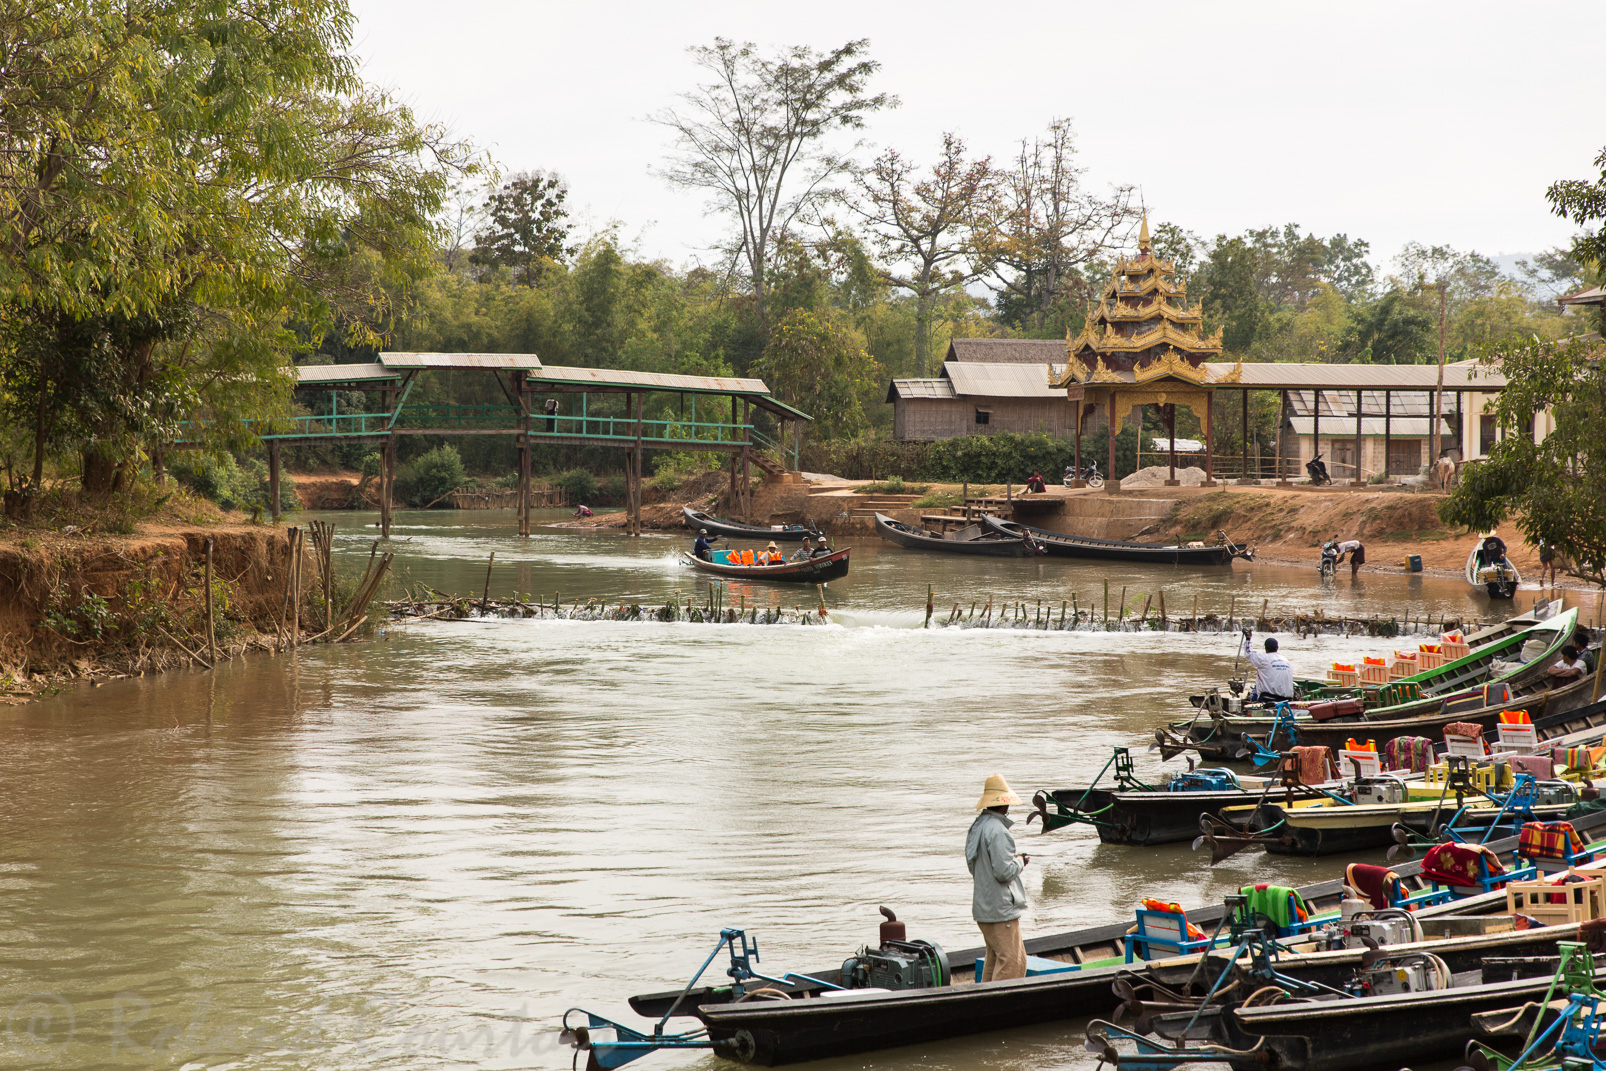 En pirogue, nous remontons une rivière pour aller voir au sommet d’une colline, la pagode Shwe in Dein.